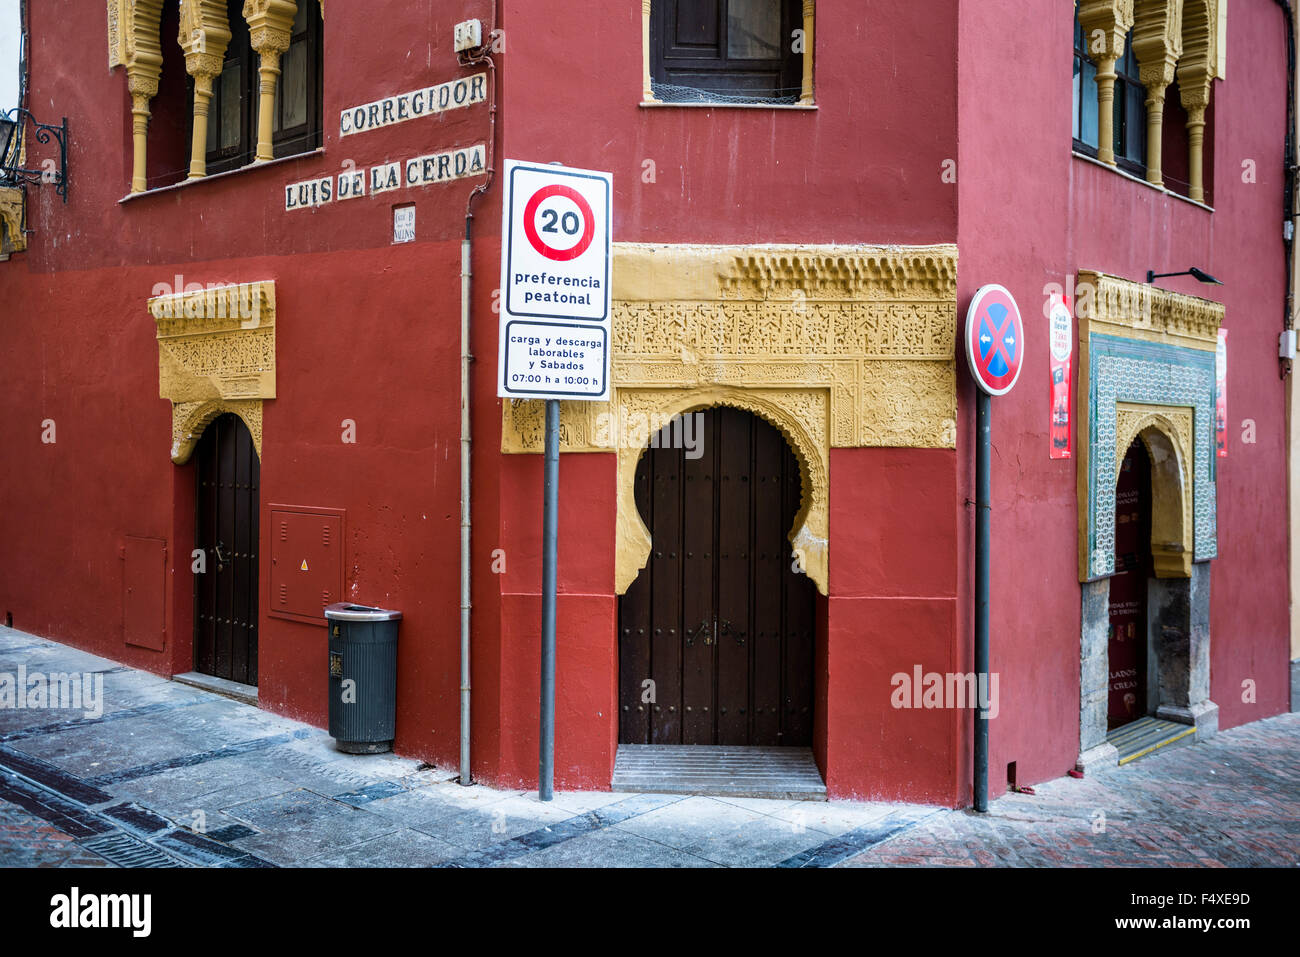 Cordoba, 18. Dezember 2013 rund um alte Cordoba in Spanien. Das ehemalige jüdische Viertel ist eines der ältesten Teile.  Foto Kees Metse Stockfoto